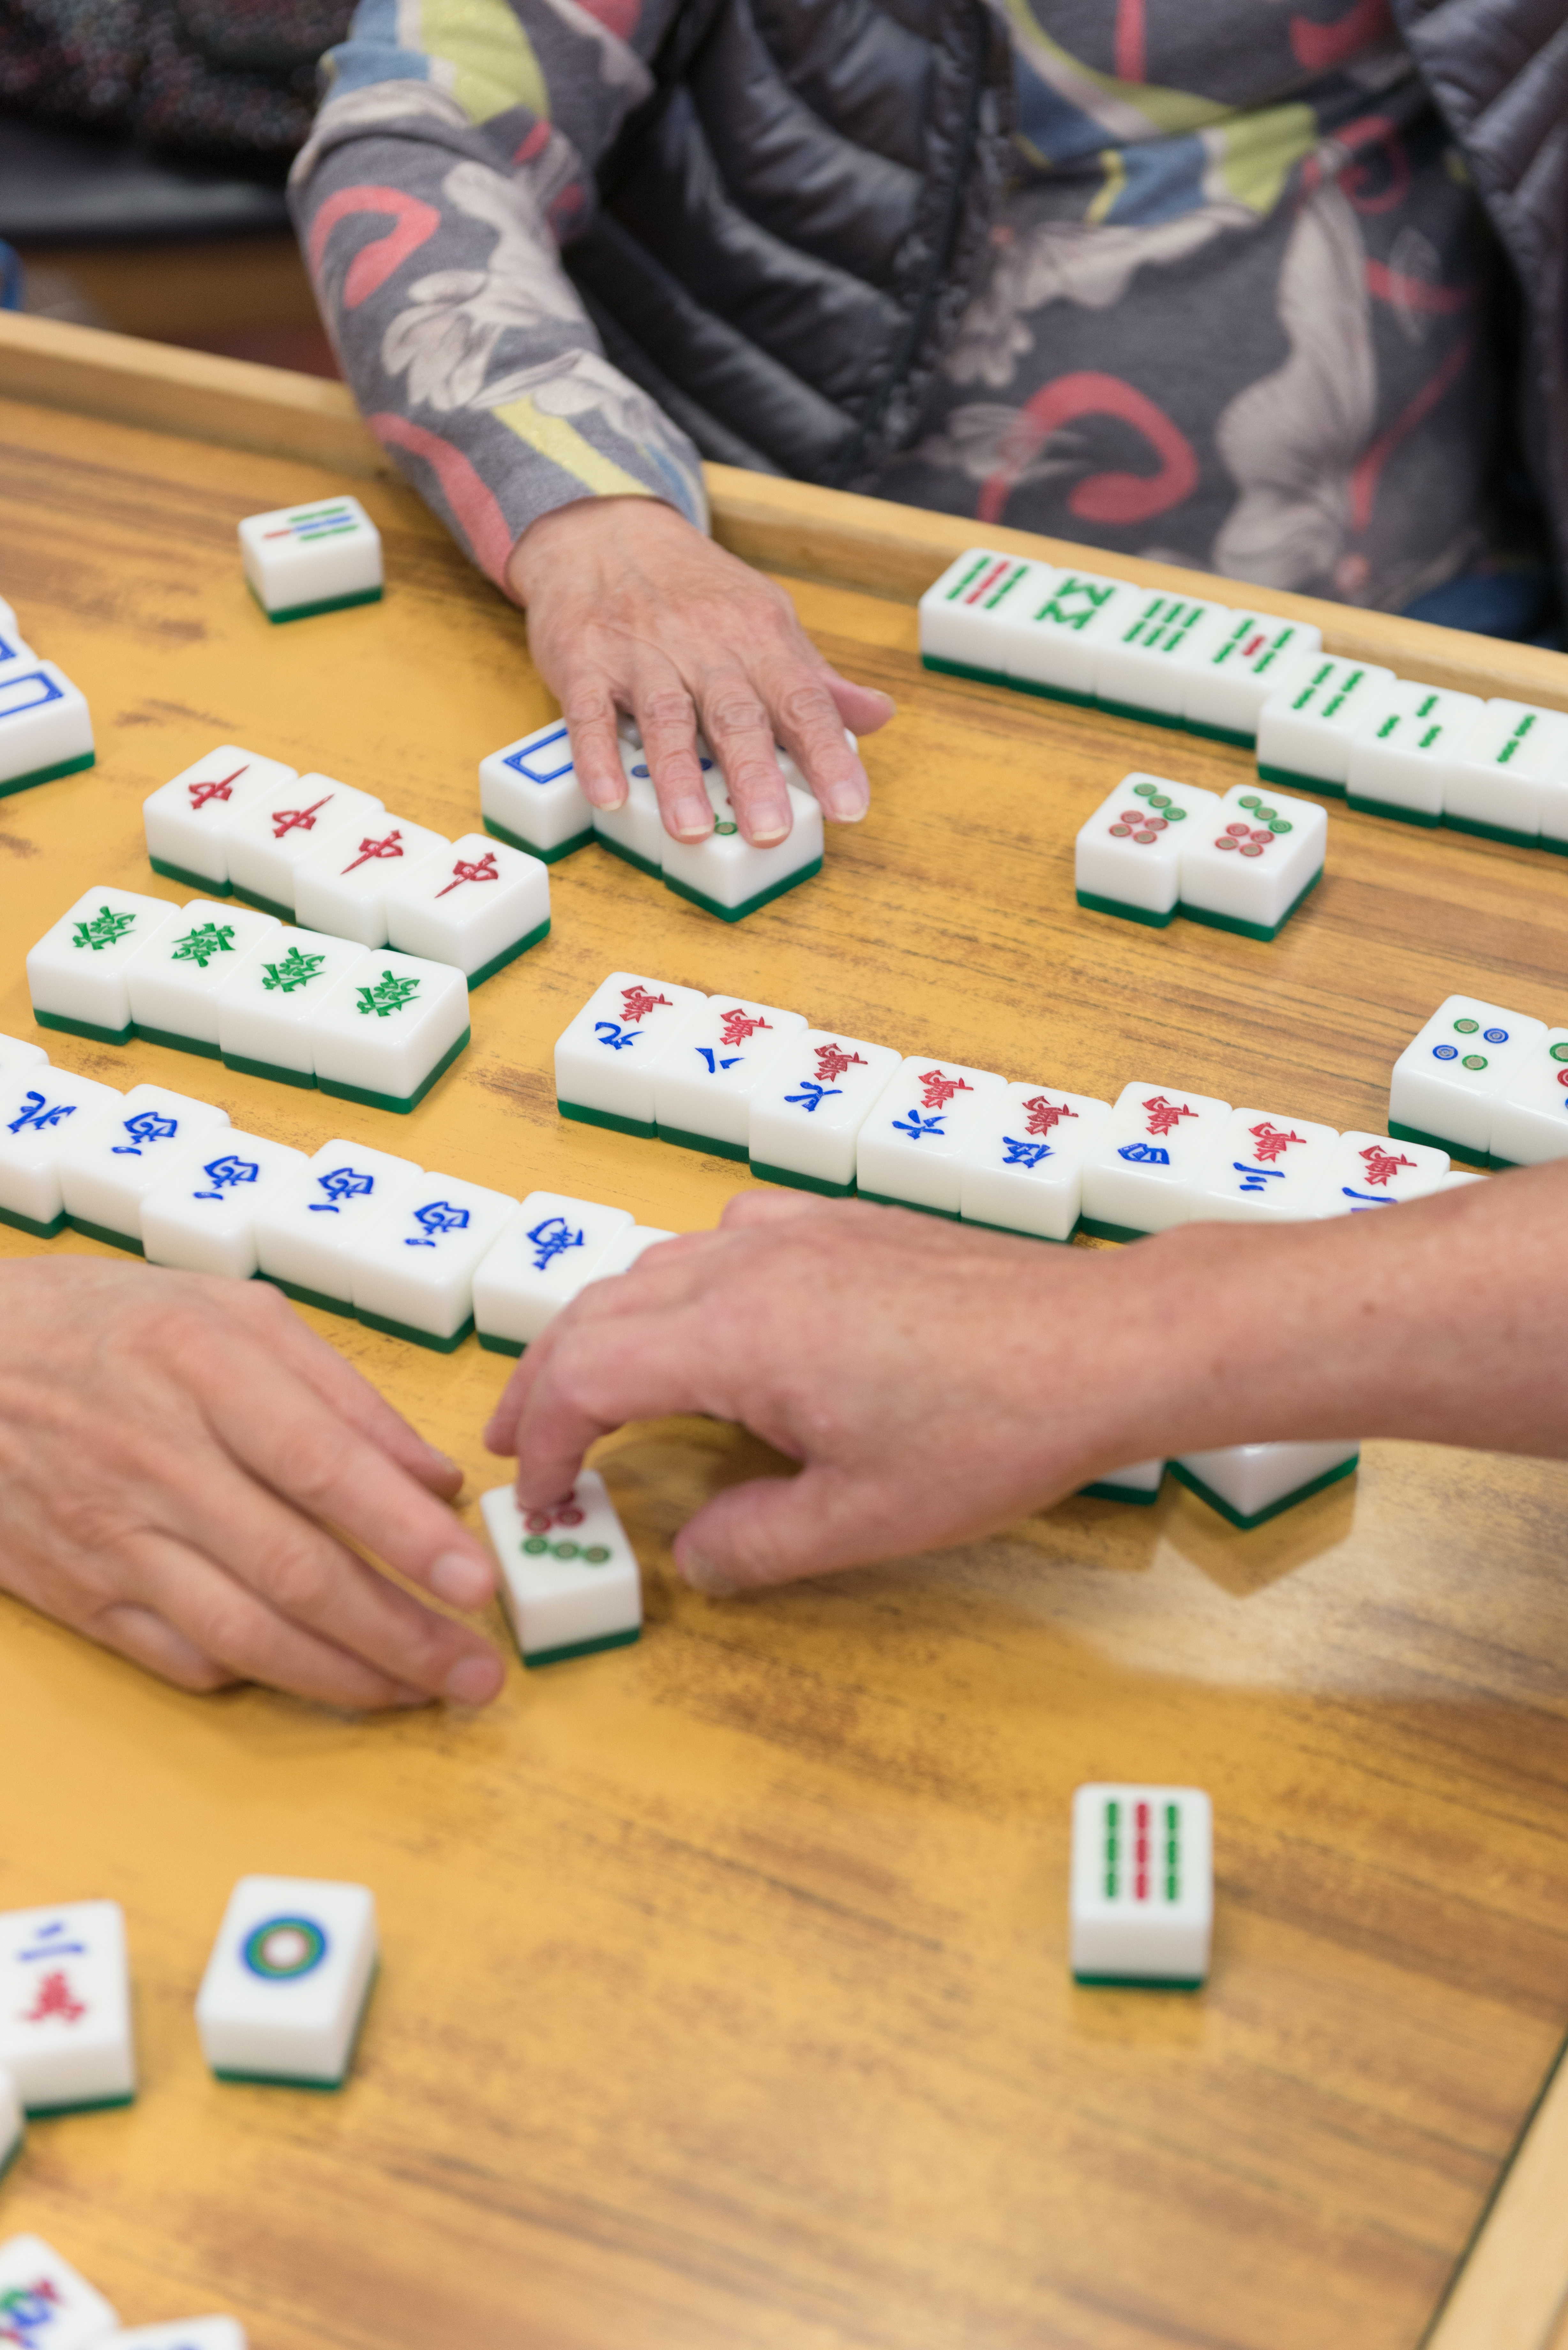 Mahjong tiles and hands